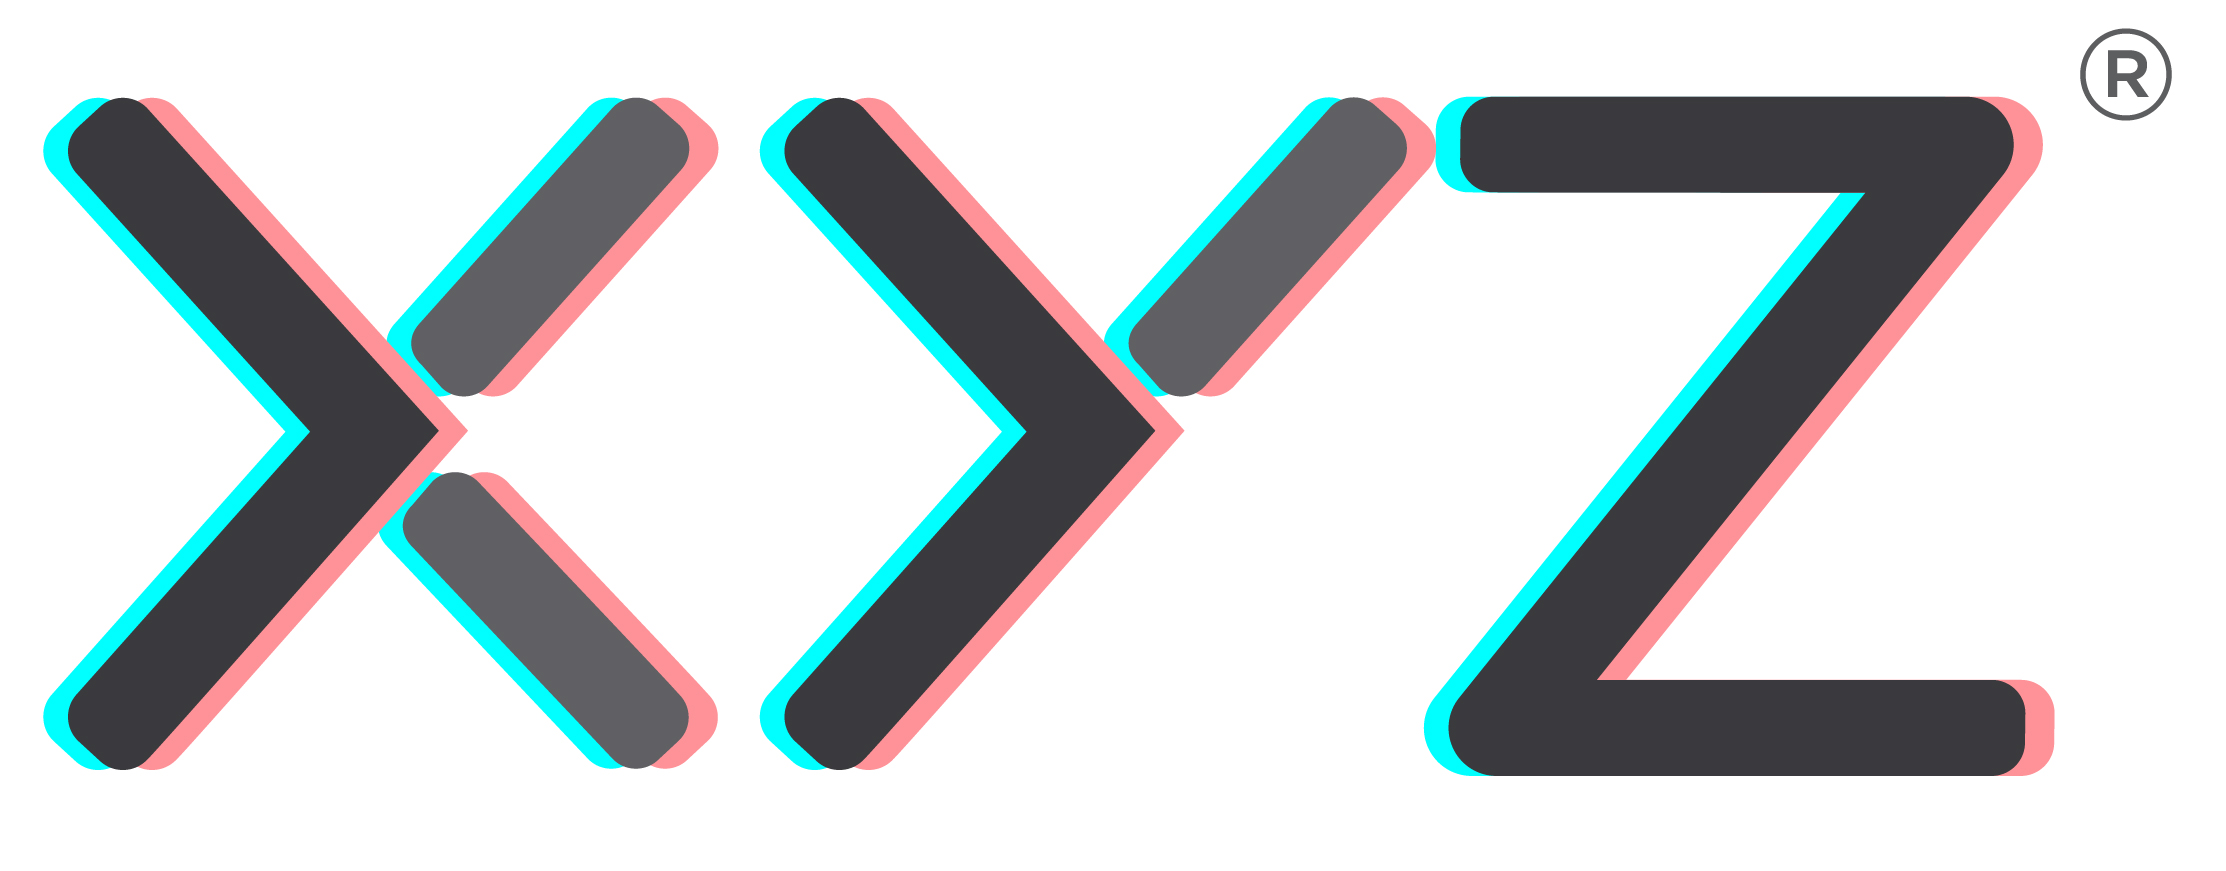 Z y ru. Xyz лого. X Y Z логотип. Поколение z эмблема.